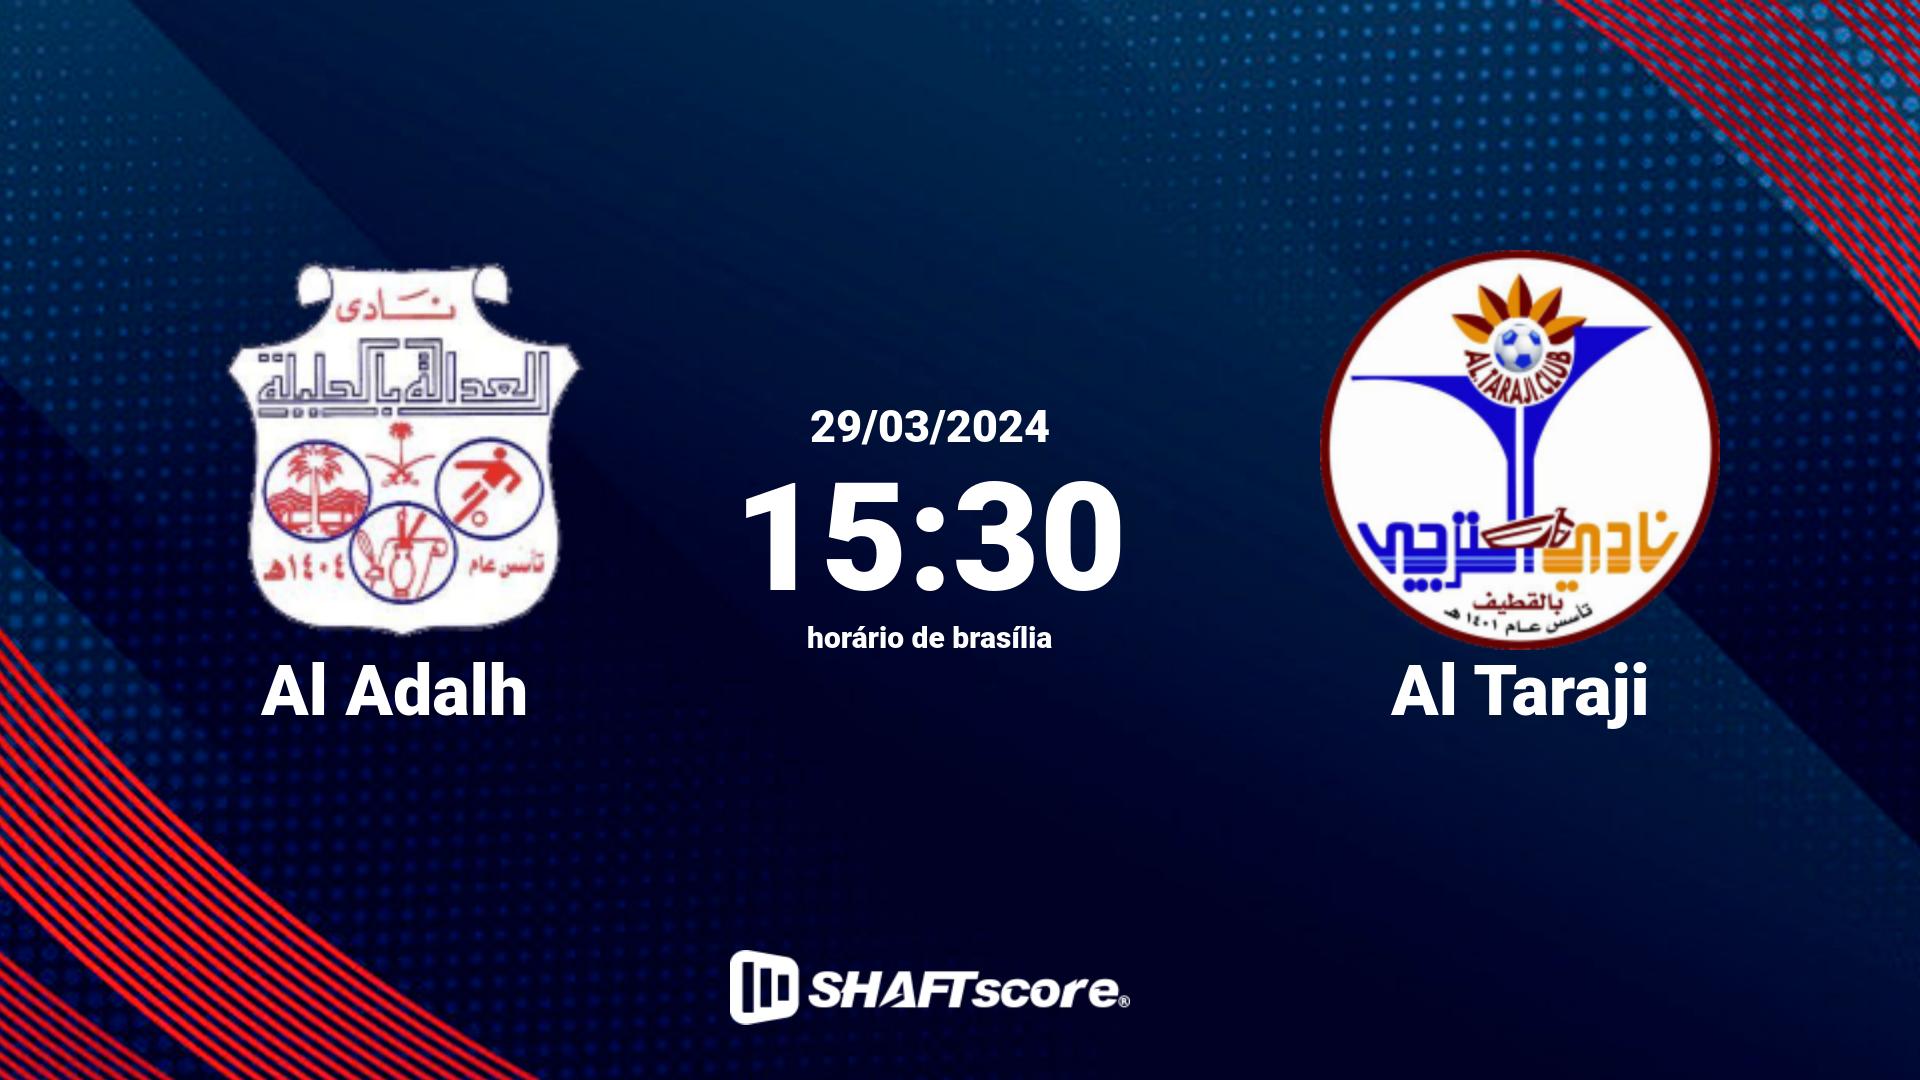 Estatísticas do jogo Al Adalh vs Al Taraji 29.03 15:30